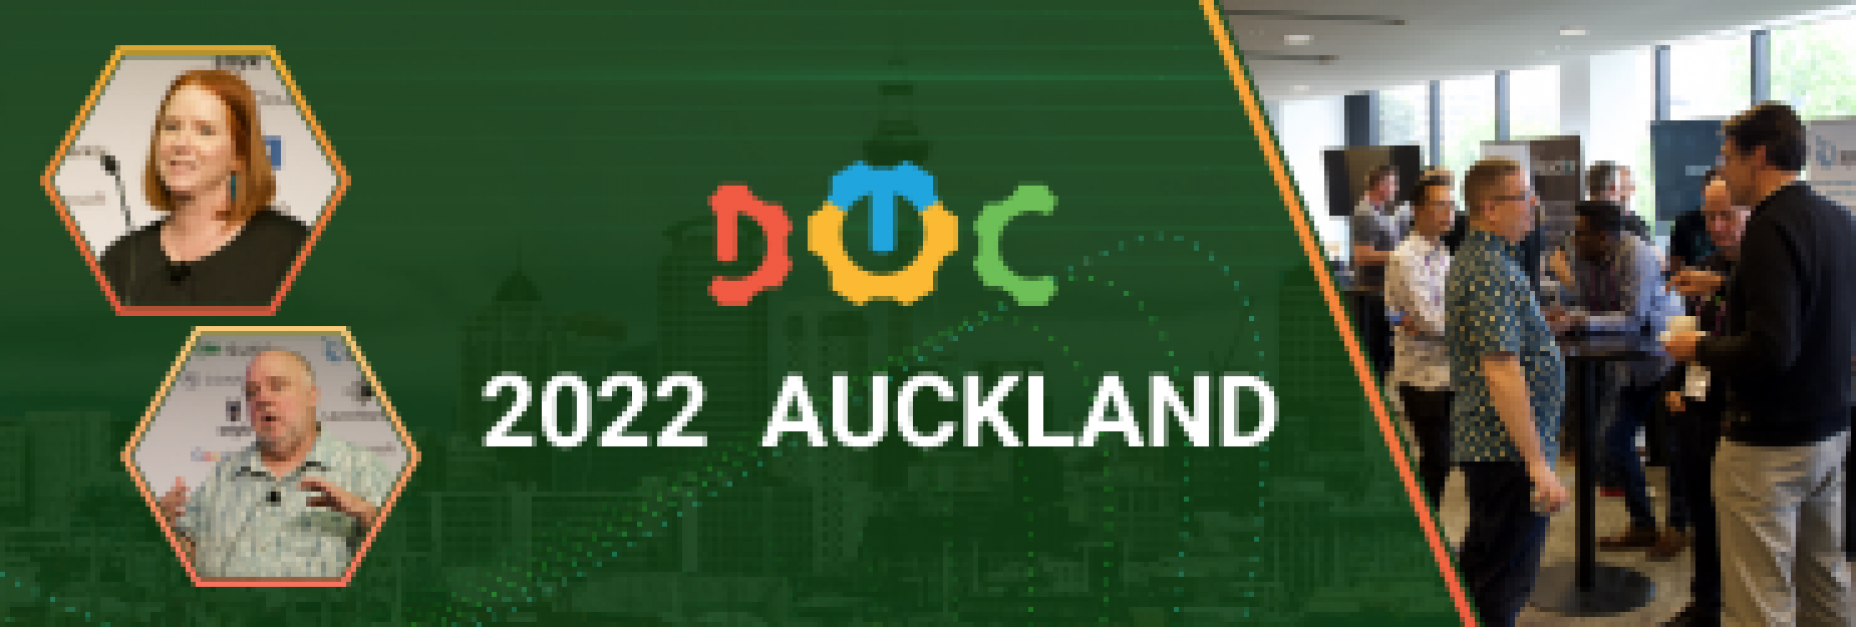 DevOps Conference Auckland 2022